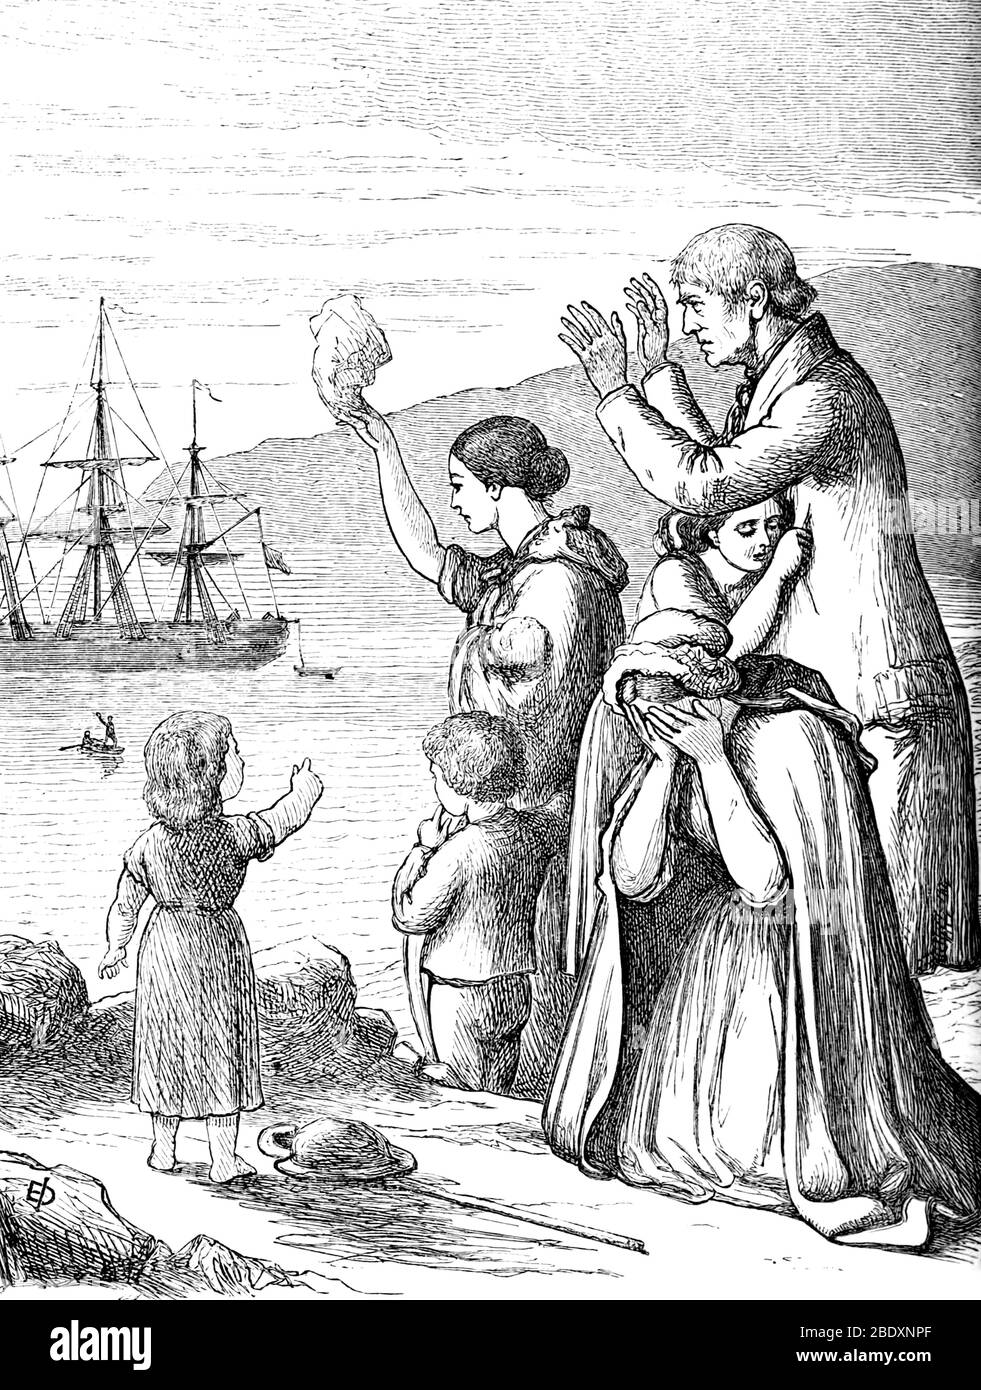 La Grande famine, l'adieu des émigrants, XIXe siècle Banque D'Images